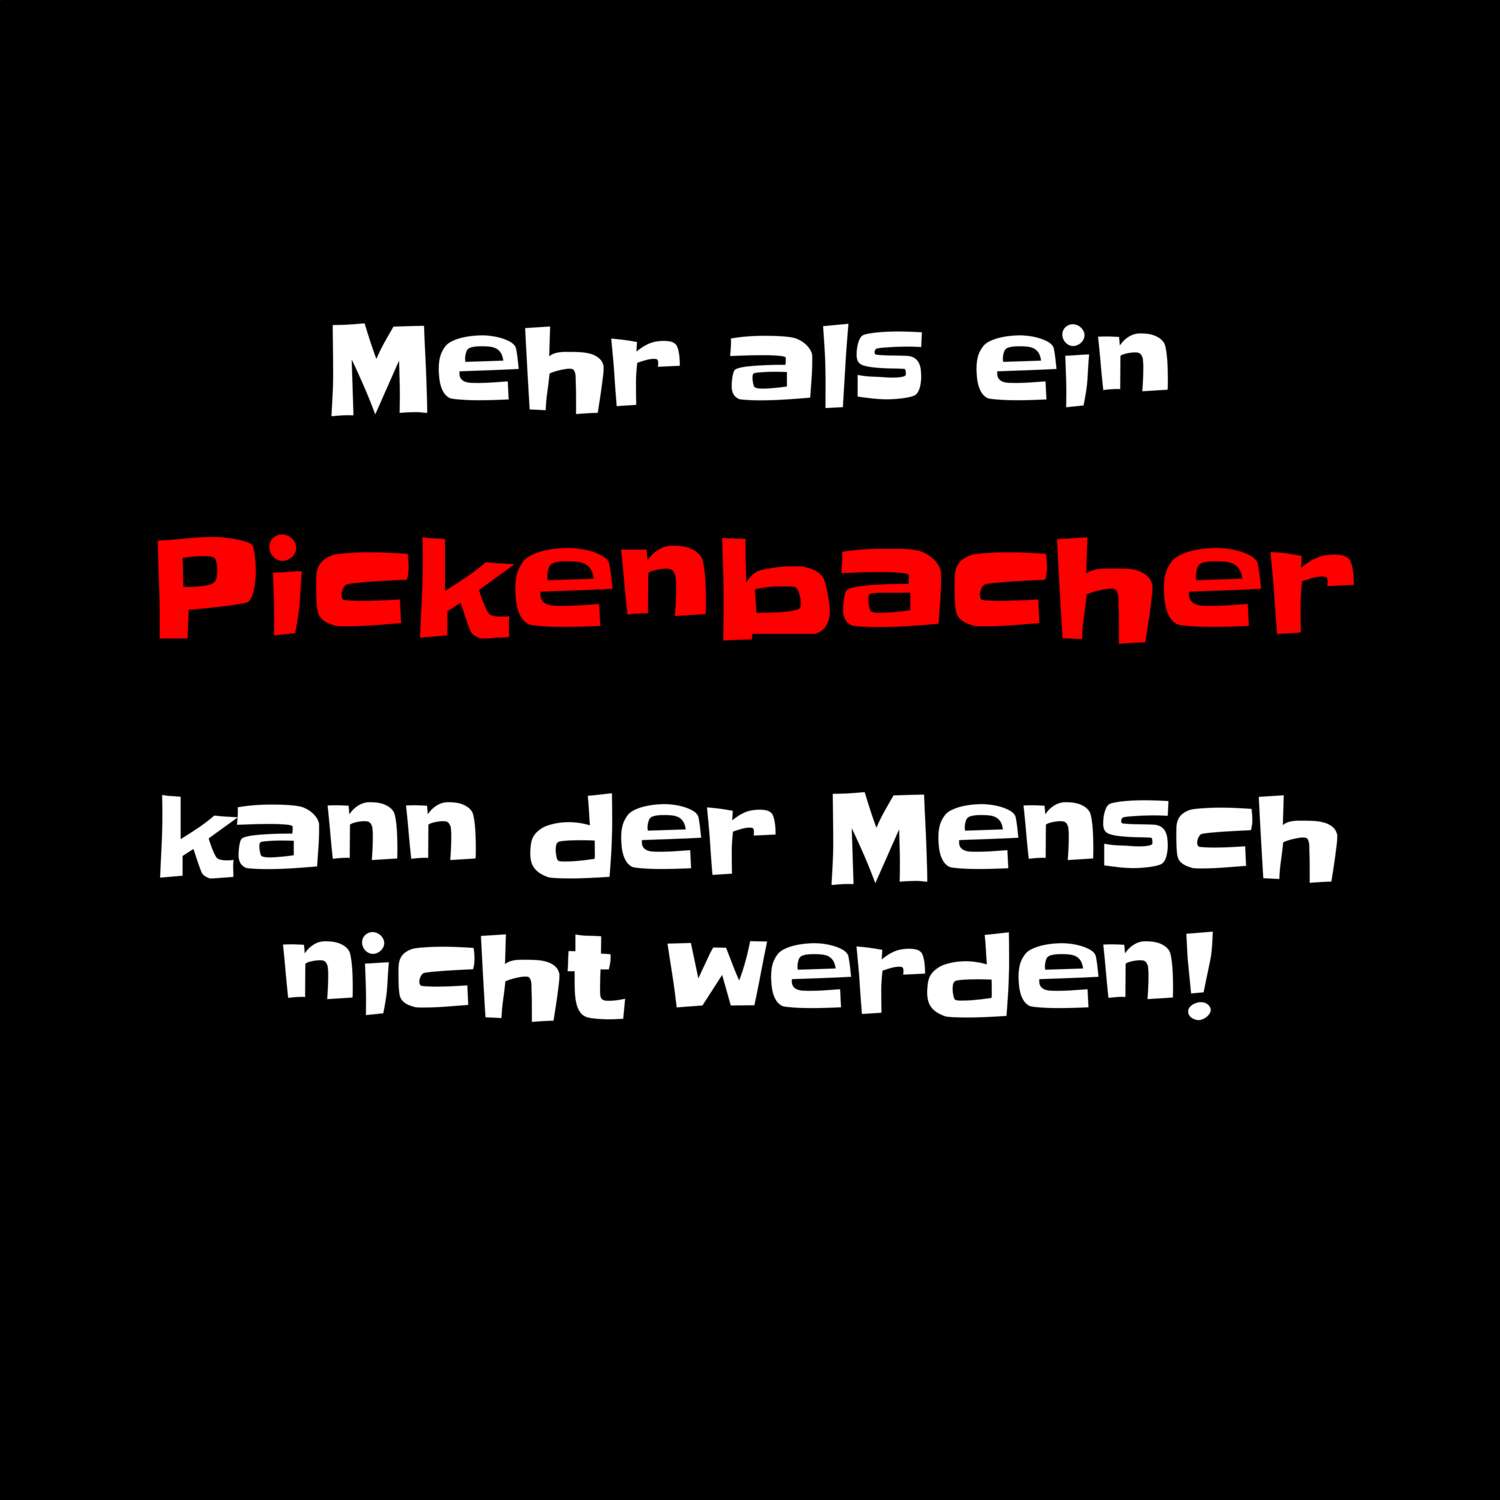 Pickenbach T-Shirt »Mehr als ein«